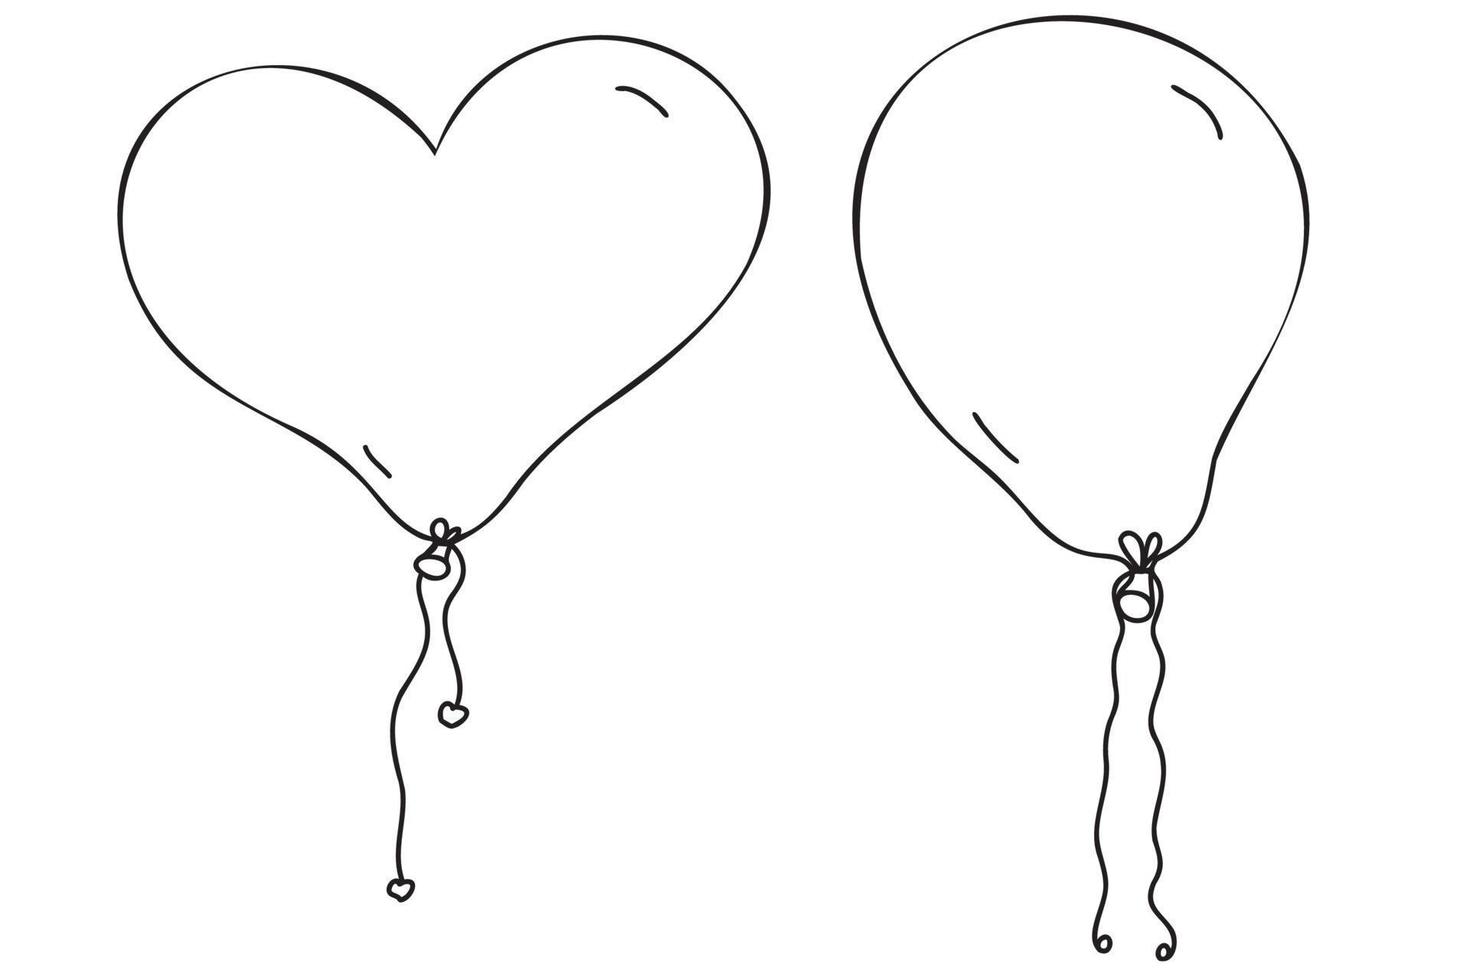 ballon gezeichneter schwarzer umriss herzförmig und schlicht für geburtstage, 8. märz, färbung, karten, stoff- und kleidungsdruck vektor